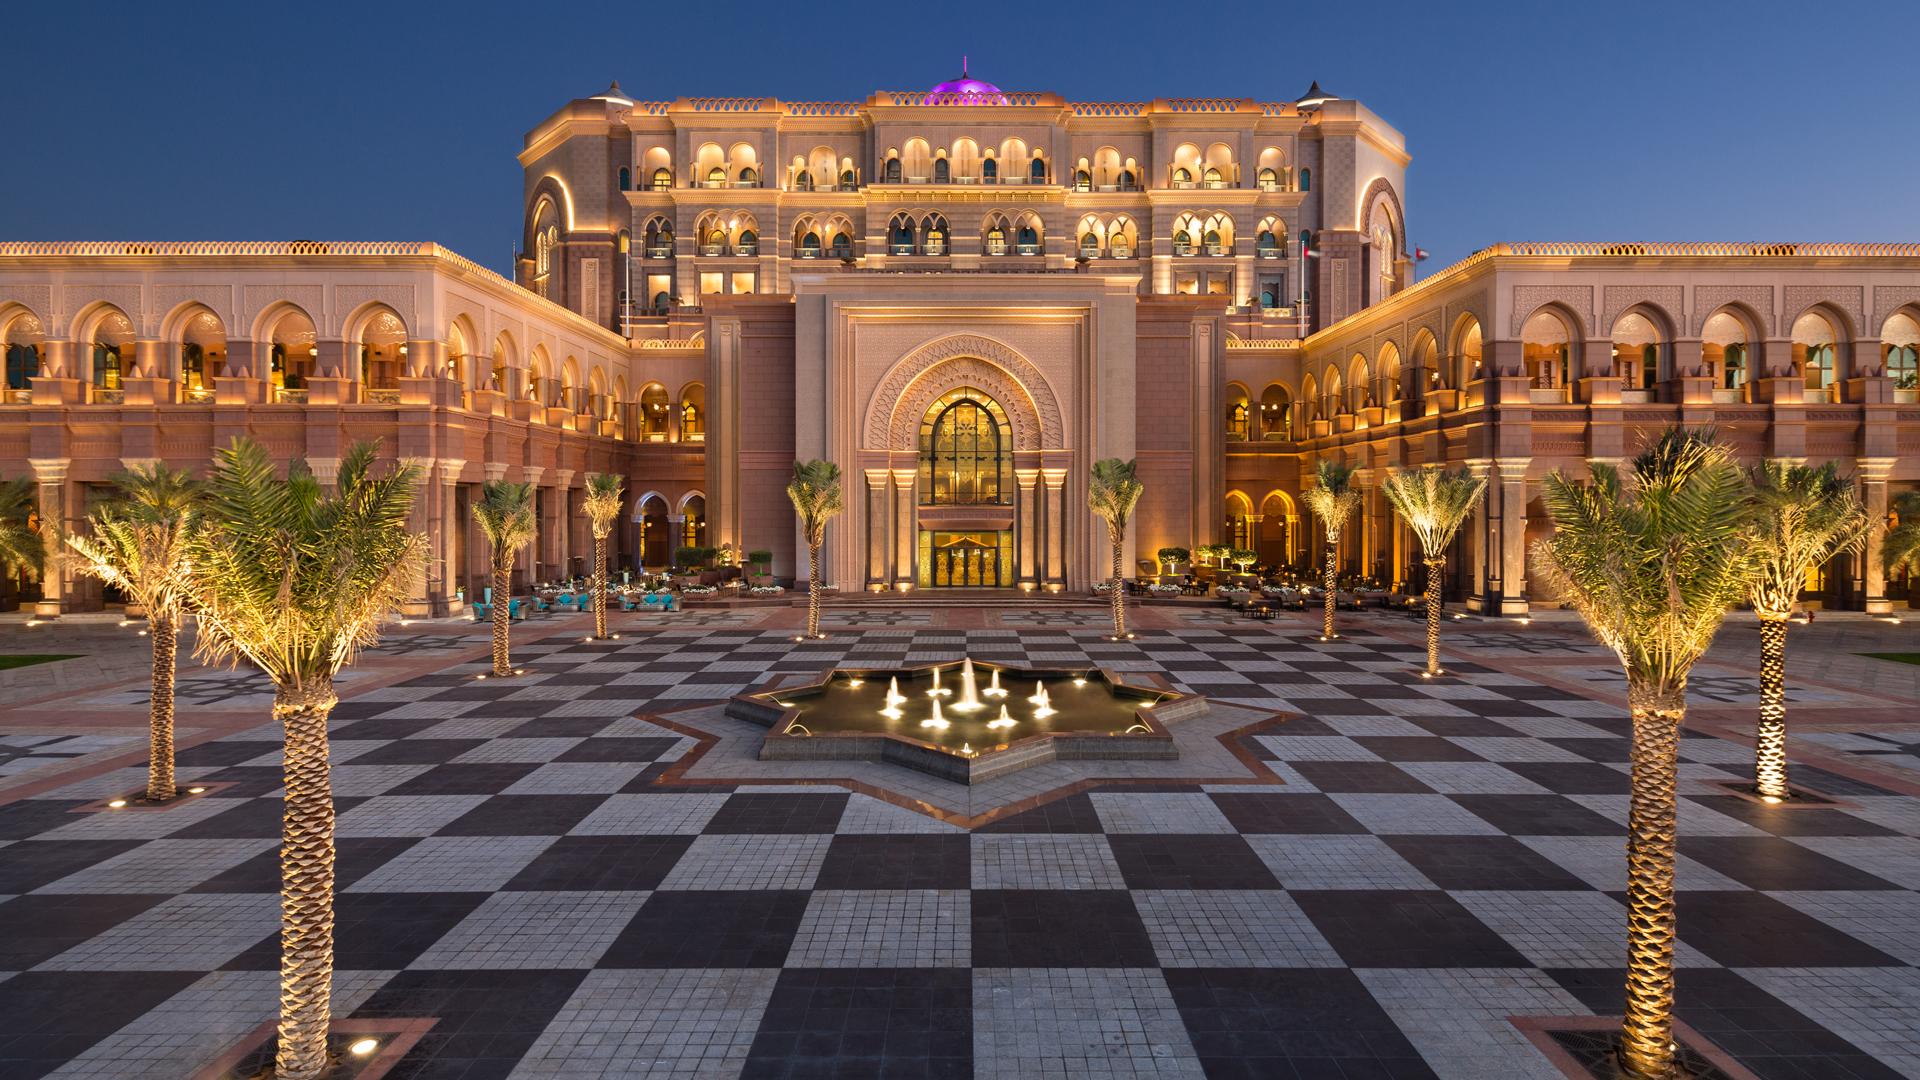 Luxury 5 Star Hotel in Abu Dhabi | Emirates Palace